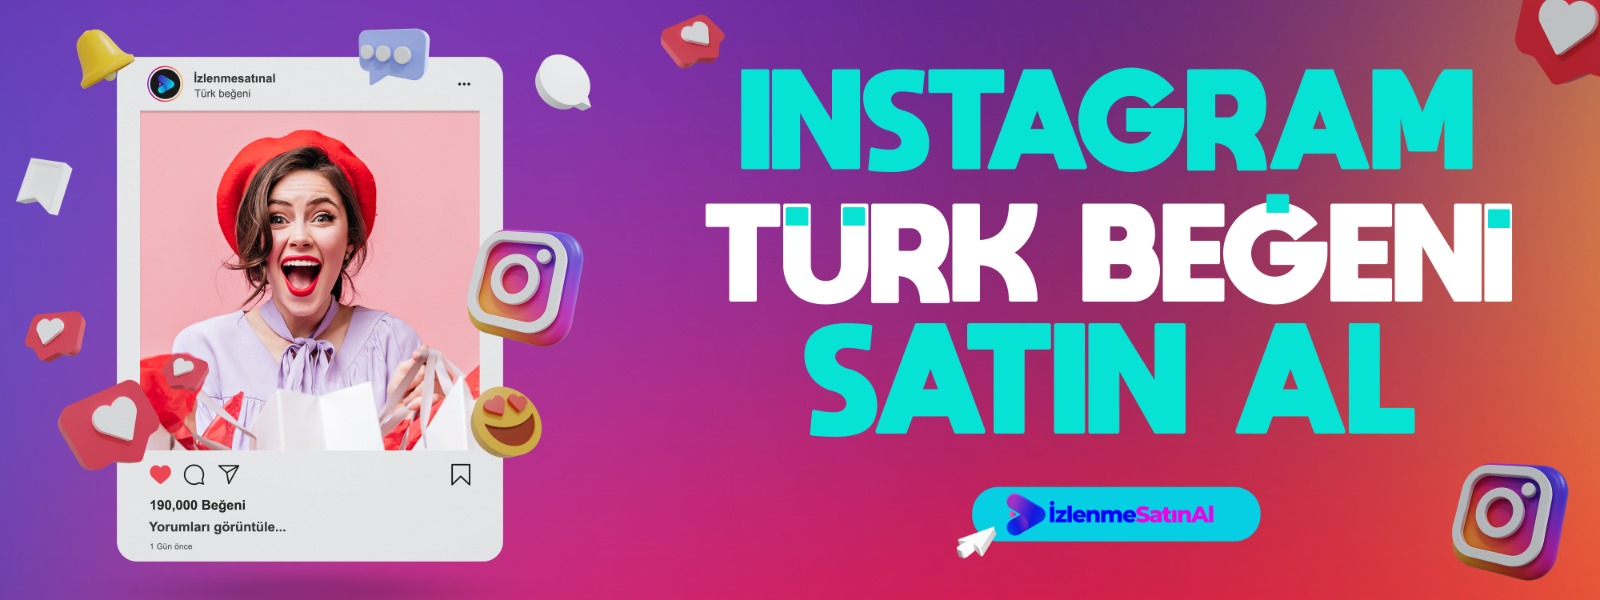 Instagram Türk beğeni satın al